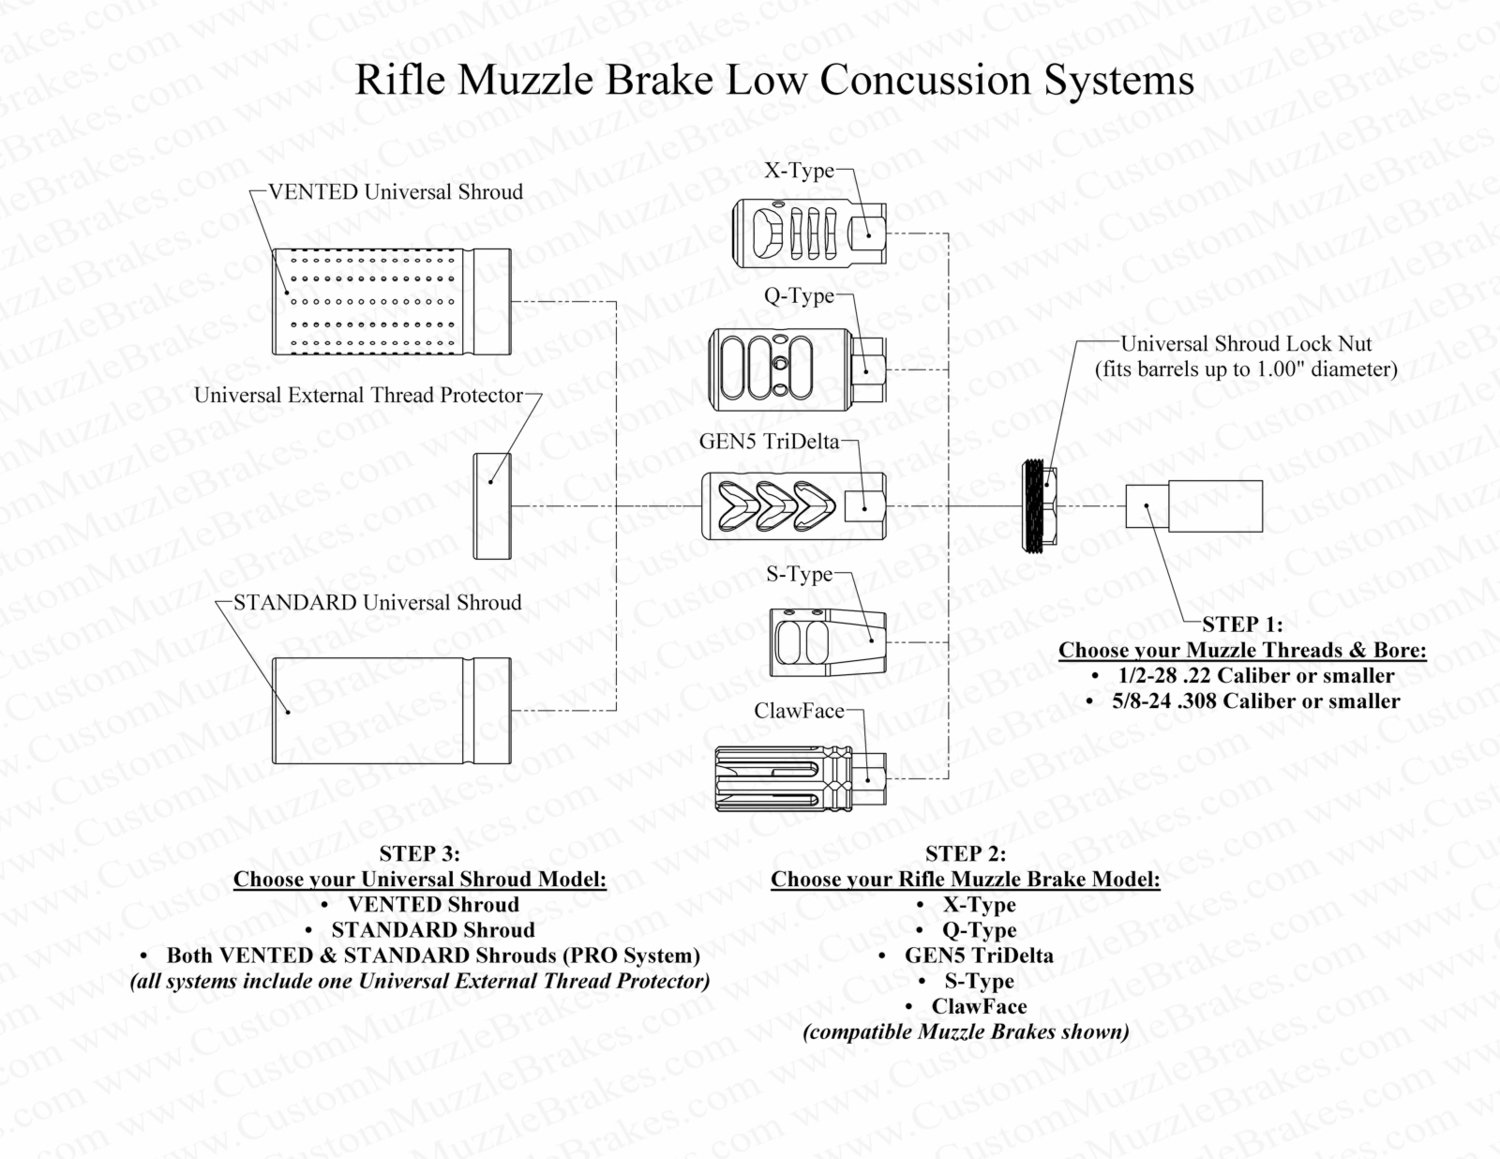 US15 Ultra Low Concussion System Chart Description